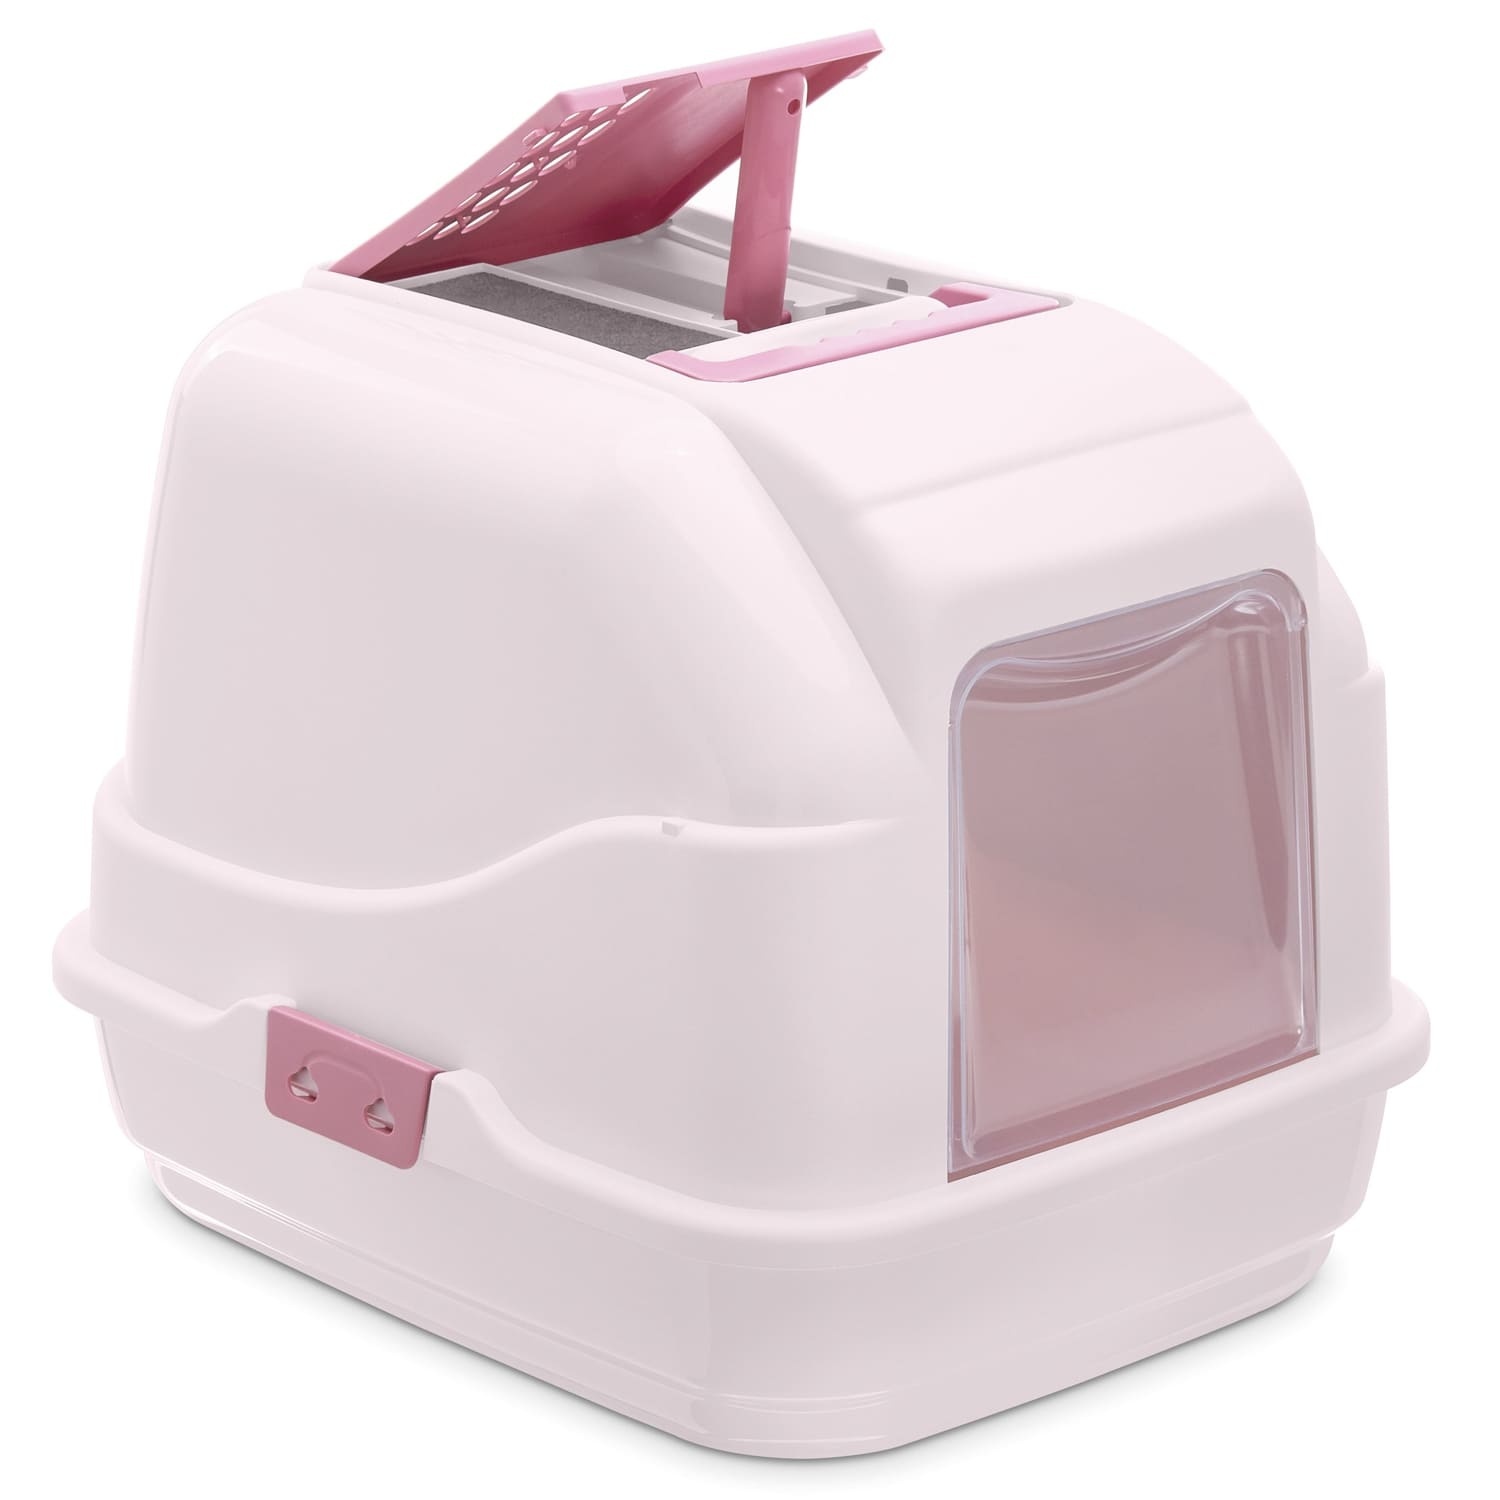 IMAC IMAC био-туалет для кошек, нежно-розовый (1,7 кг) imac imac переноска для кошек и собак антрацит 1 37 кг